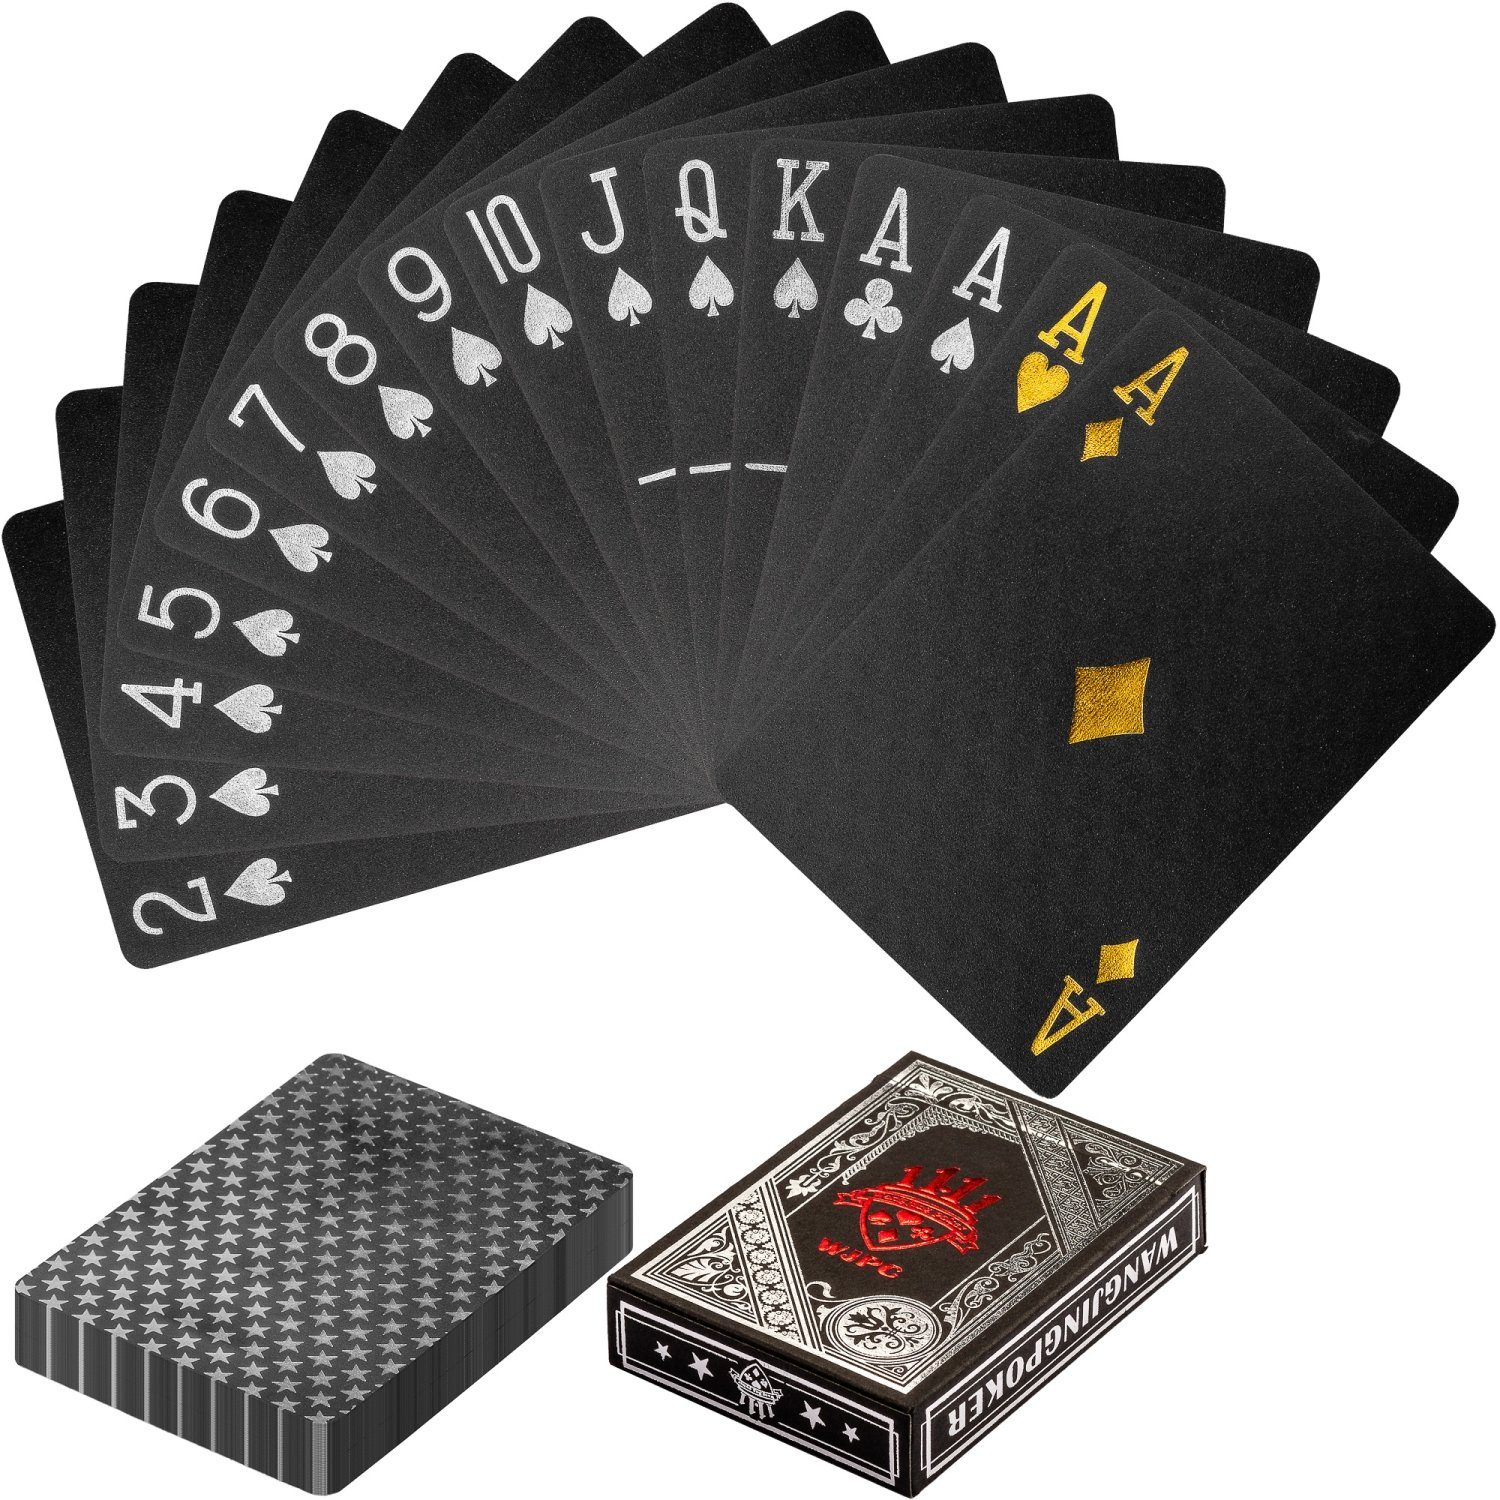 GAMES PLANET Spielesammlung, Games Planet® Design Pokerkarten aus  Kunststoff, 100% WASSERDICHT, reißfest, Varianten: Pure Gold / Black Gold /  Black Silver, Poker Deck Plastik Spielkarten